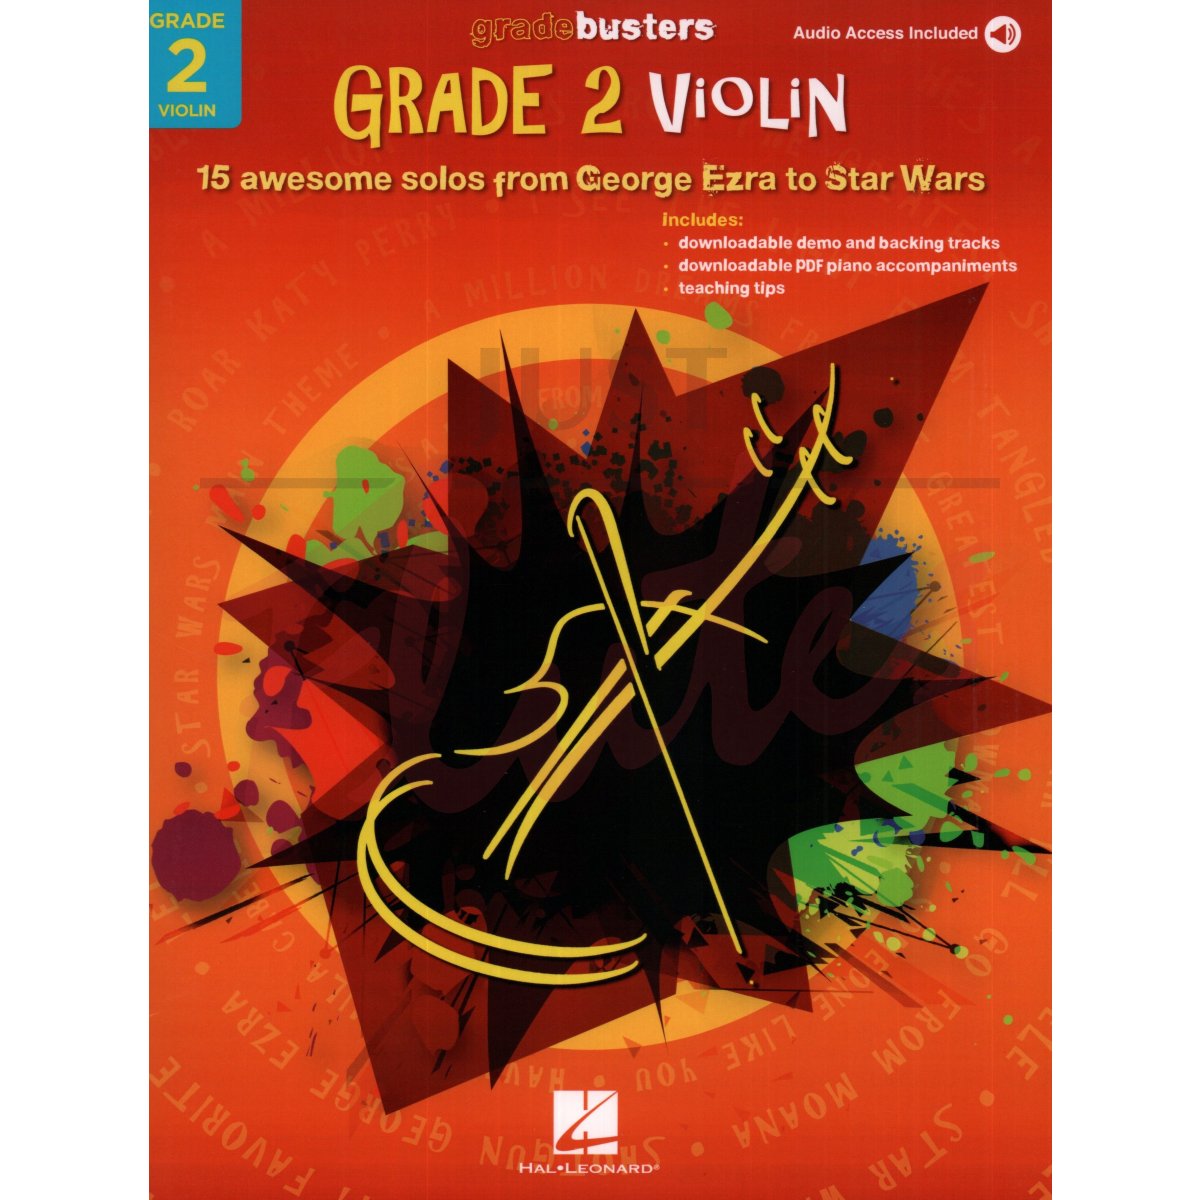 Gradebusters Grade 2 - Violin